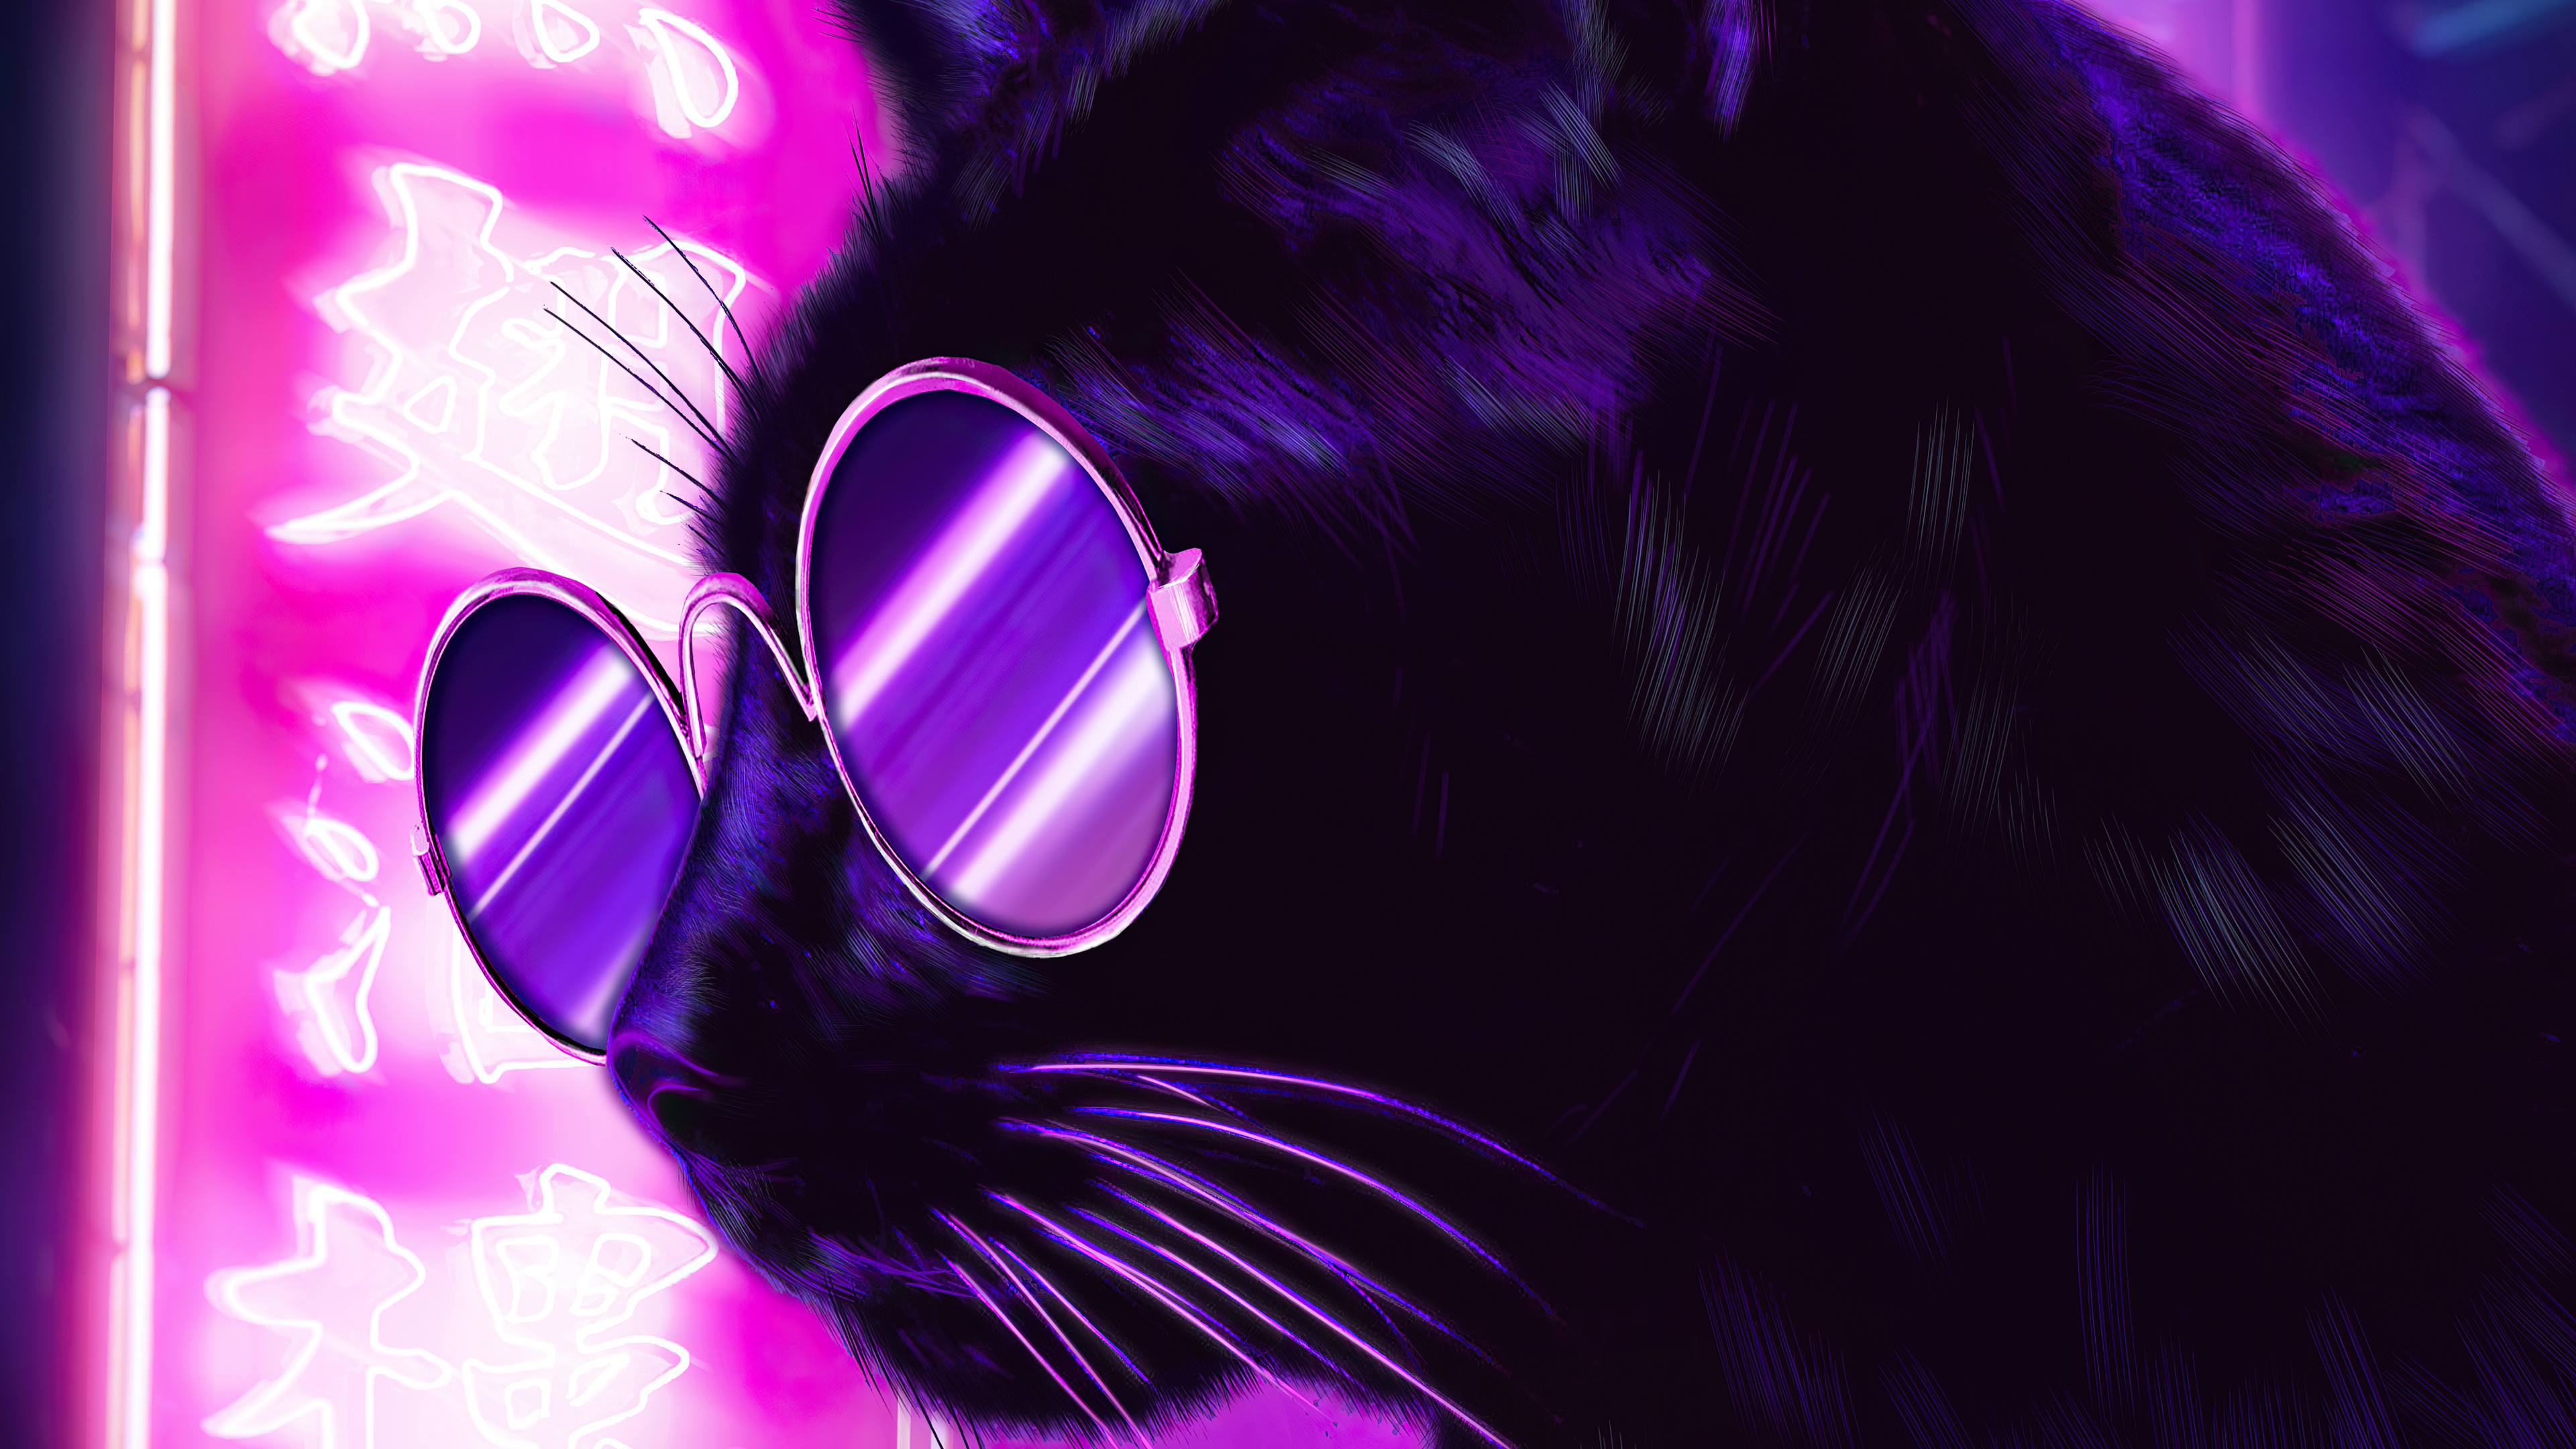 Кошка в очках рисунок